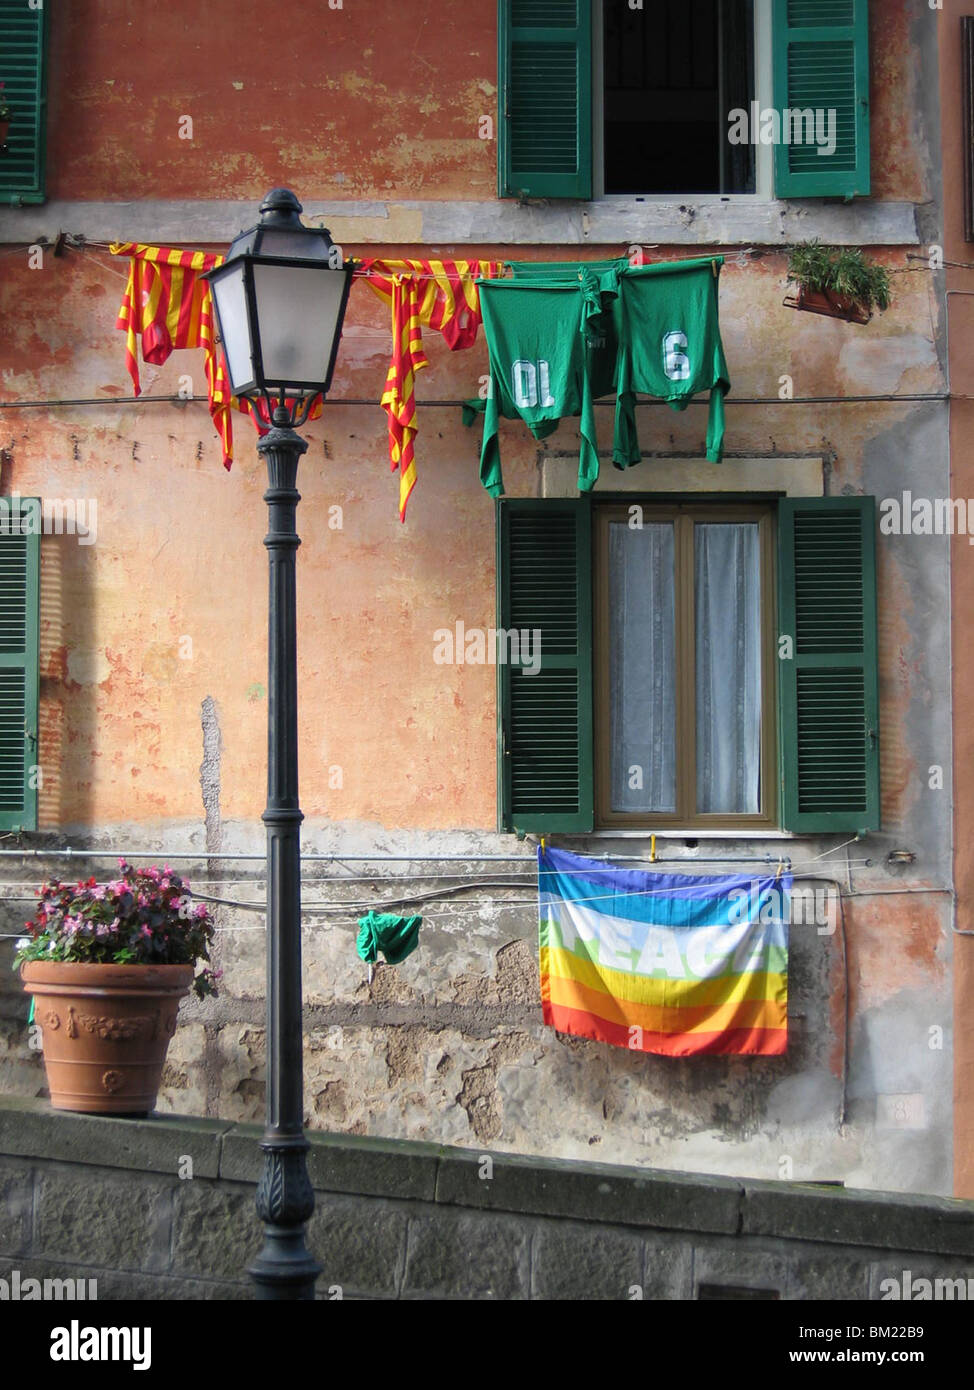 Frieden Flagge hängt an der Wand eines Hauses in dem italienischen Städtchen Castel Gandolfo, am Anfang eines alten Vulkans. Stockfoto